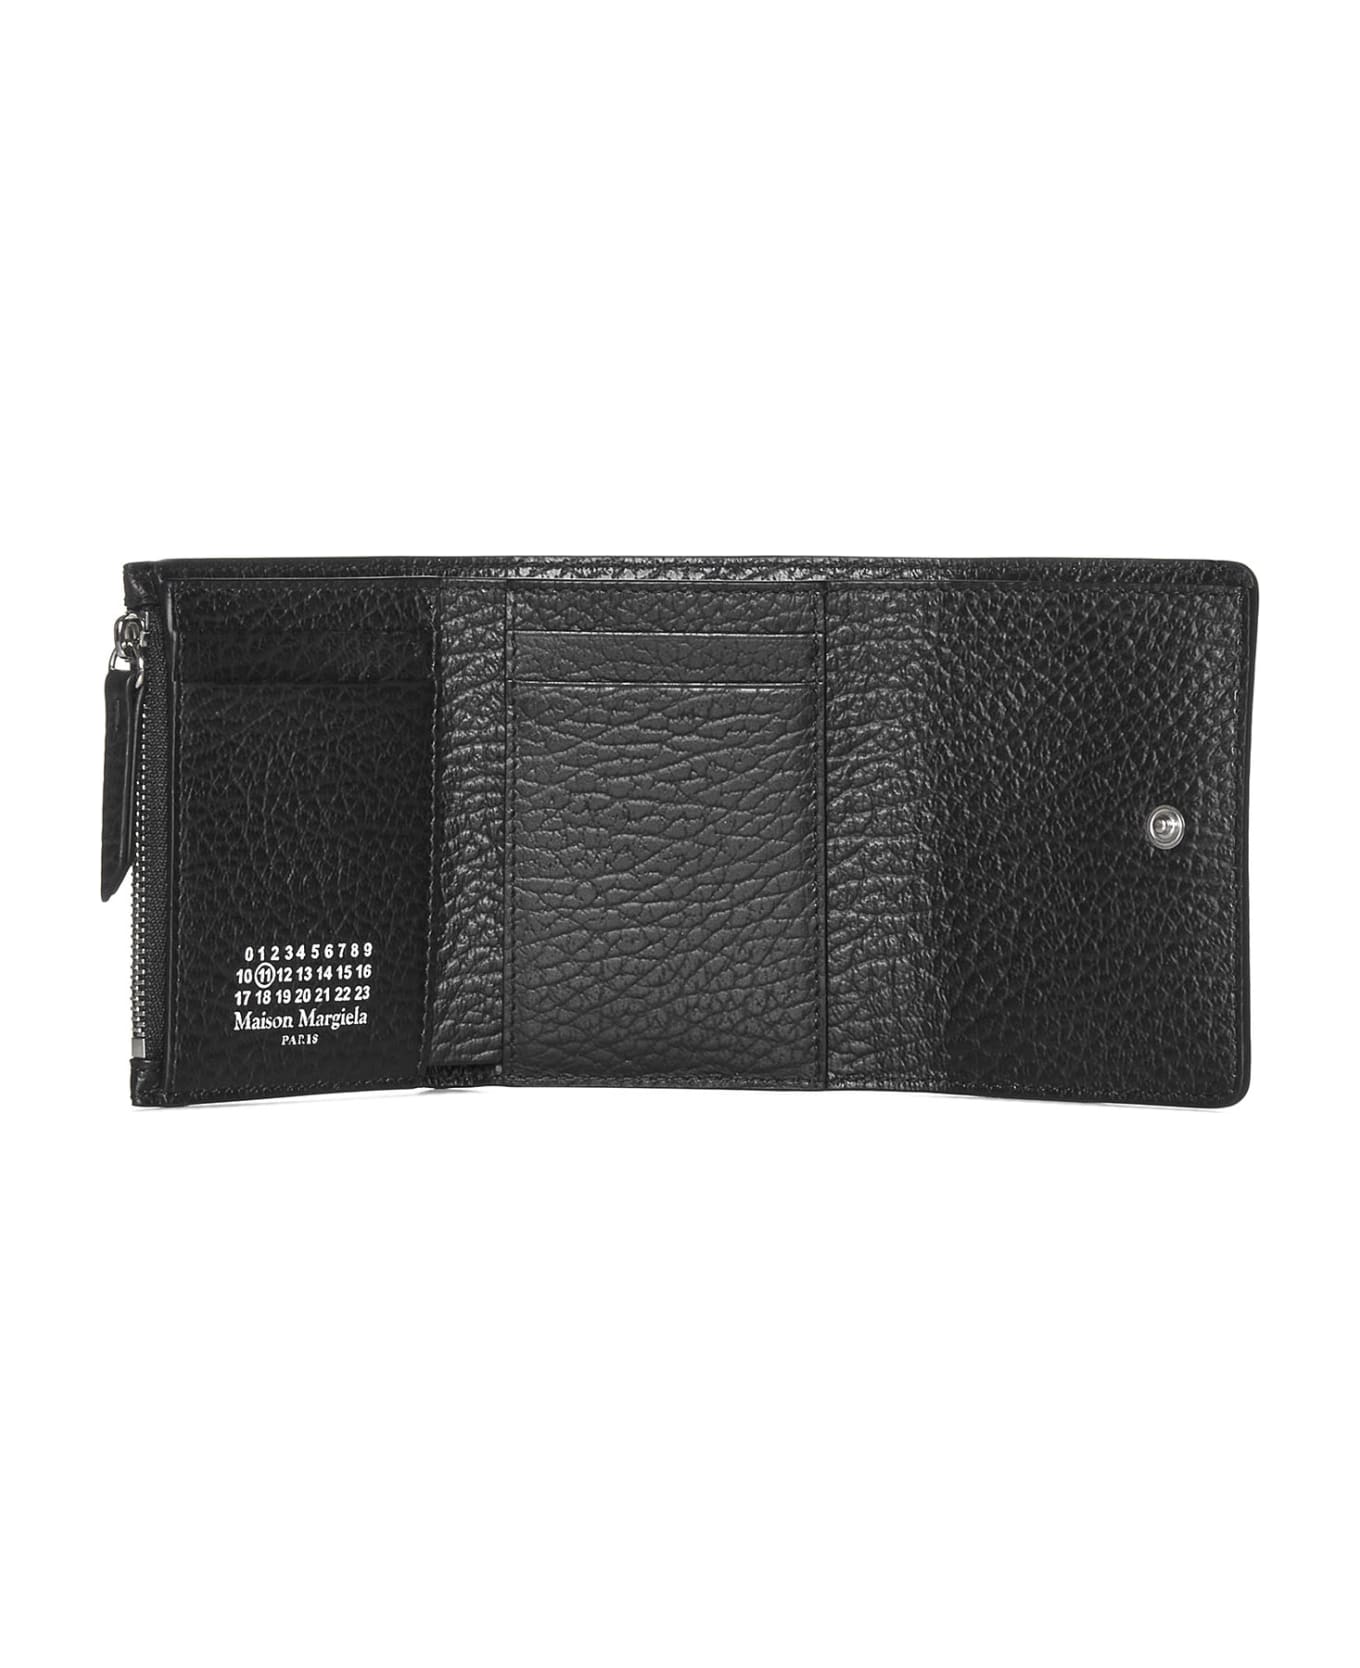 Maison Margiela Black Trifold Wallet - Black 財布